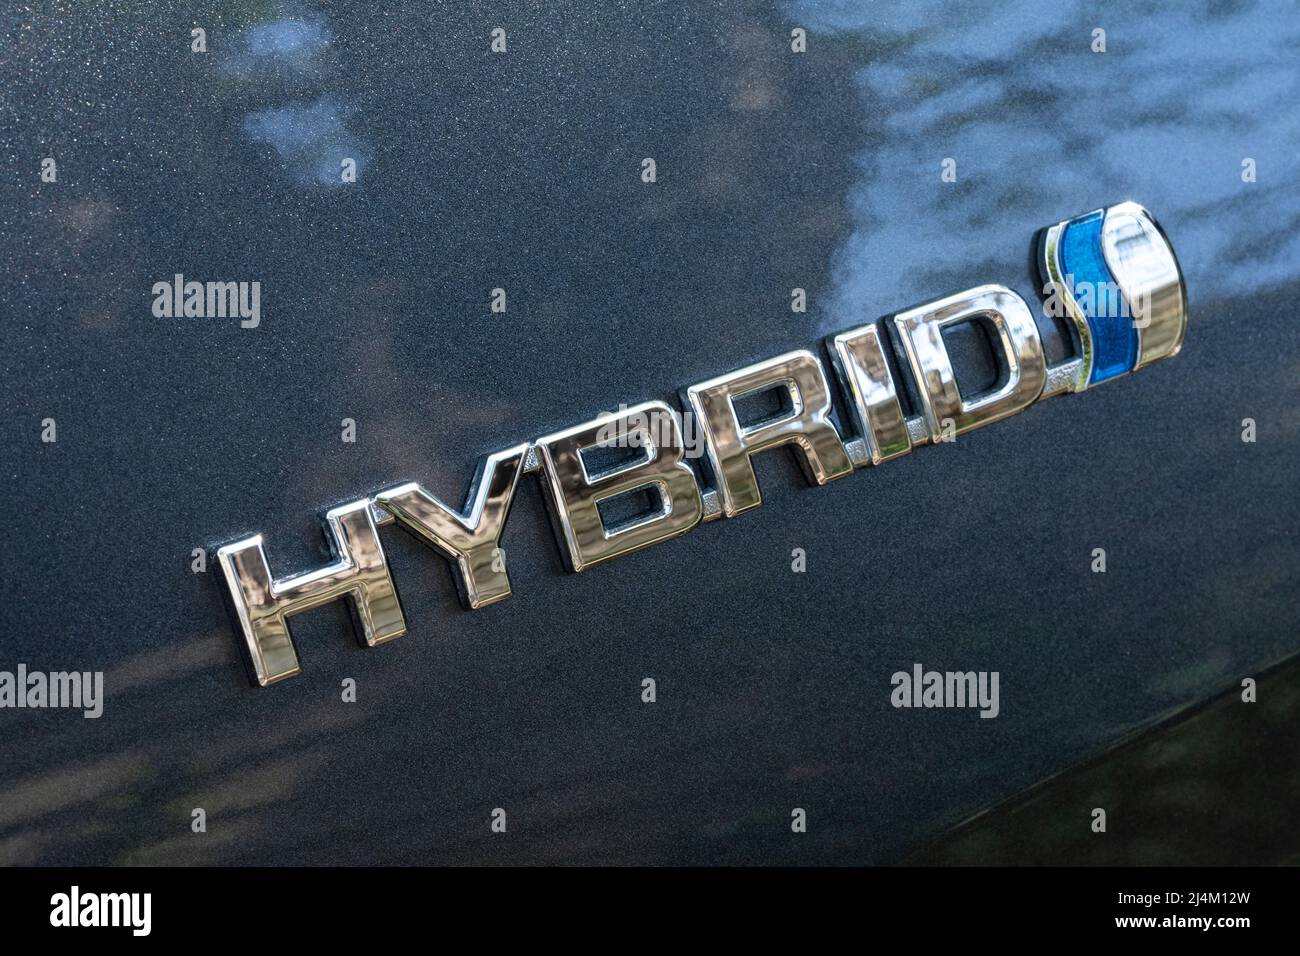 Logo Toyota Hybrid argent métallisé et bleu avec le mot Hybrid sur une Toyota CH-R européenne 2021 ROYAUME-UNI Banque D'Images